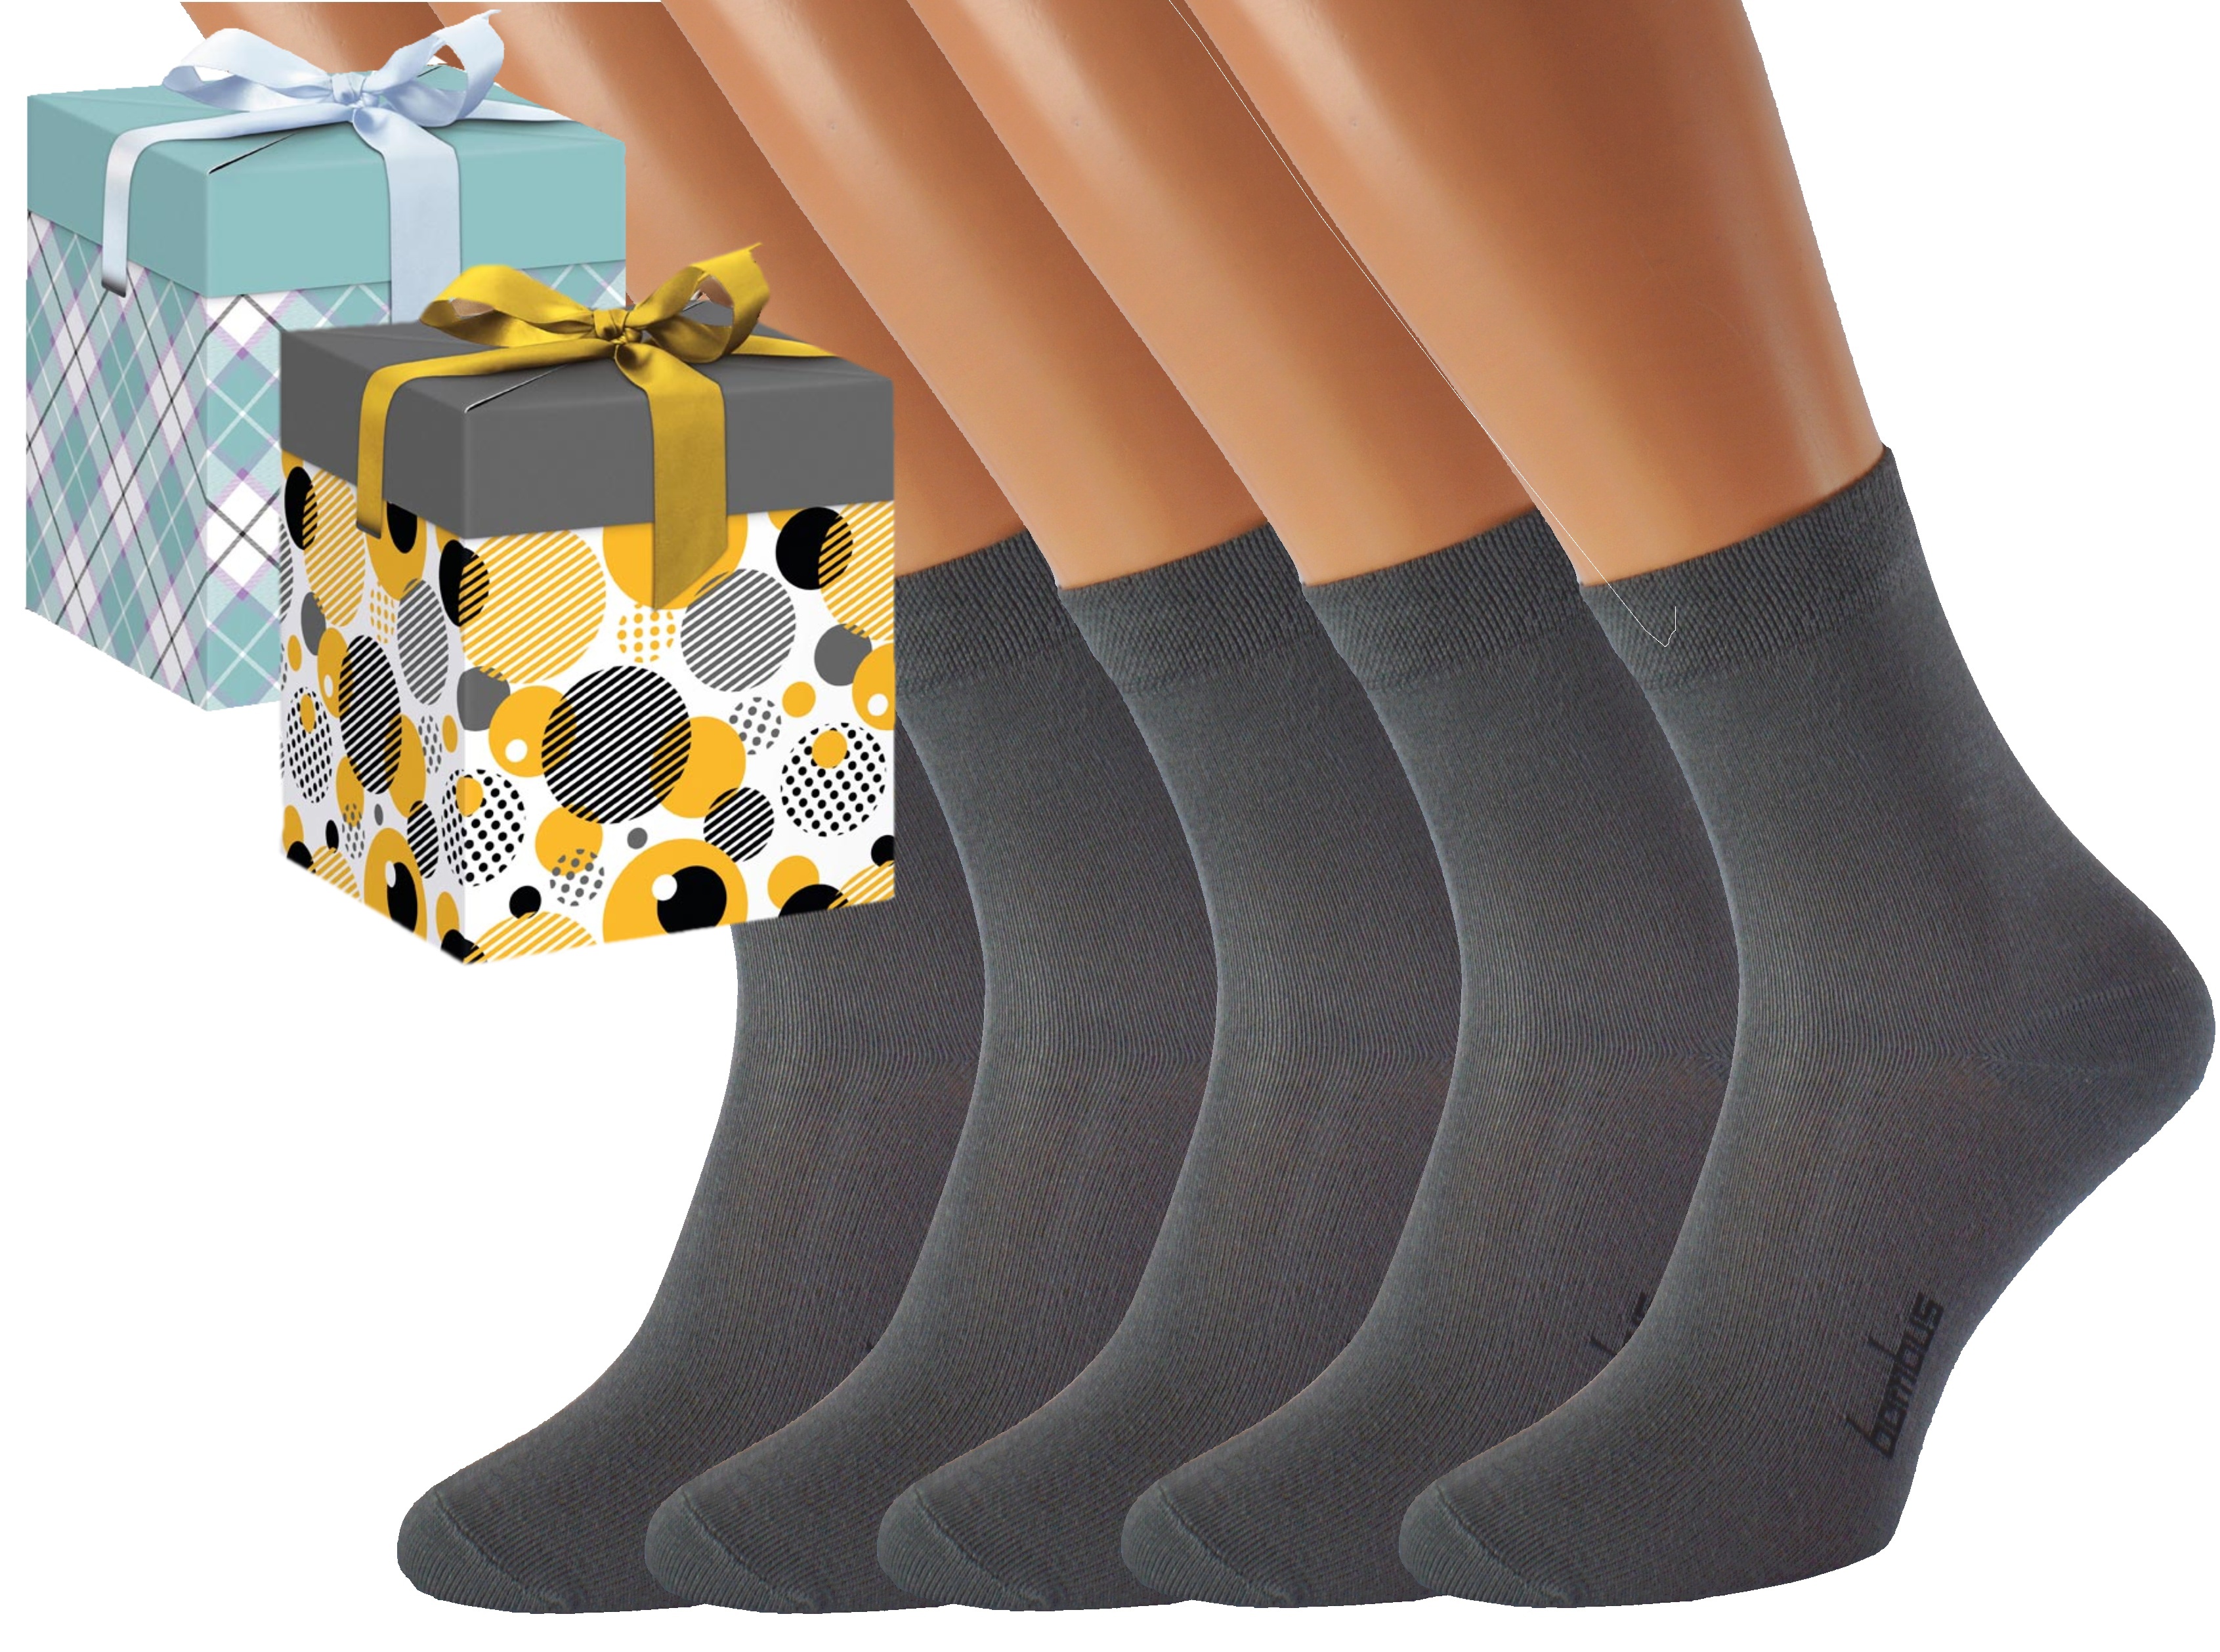 Produkt Dárkové balení 5 párů bambusových ponožek BAMBOO Barva: Světle šedé, Velikost: EUR 39-42 (UK 6-8), Zvolte variantu dárkového balení: Modrá s…